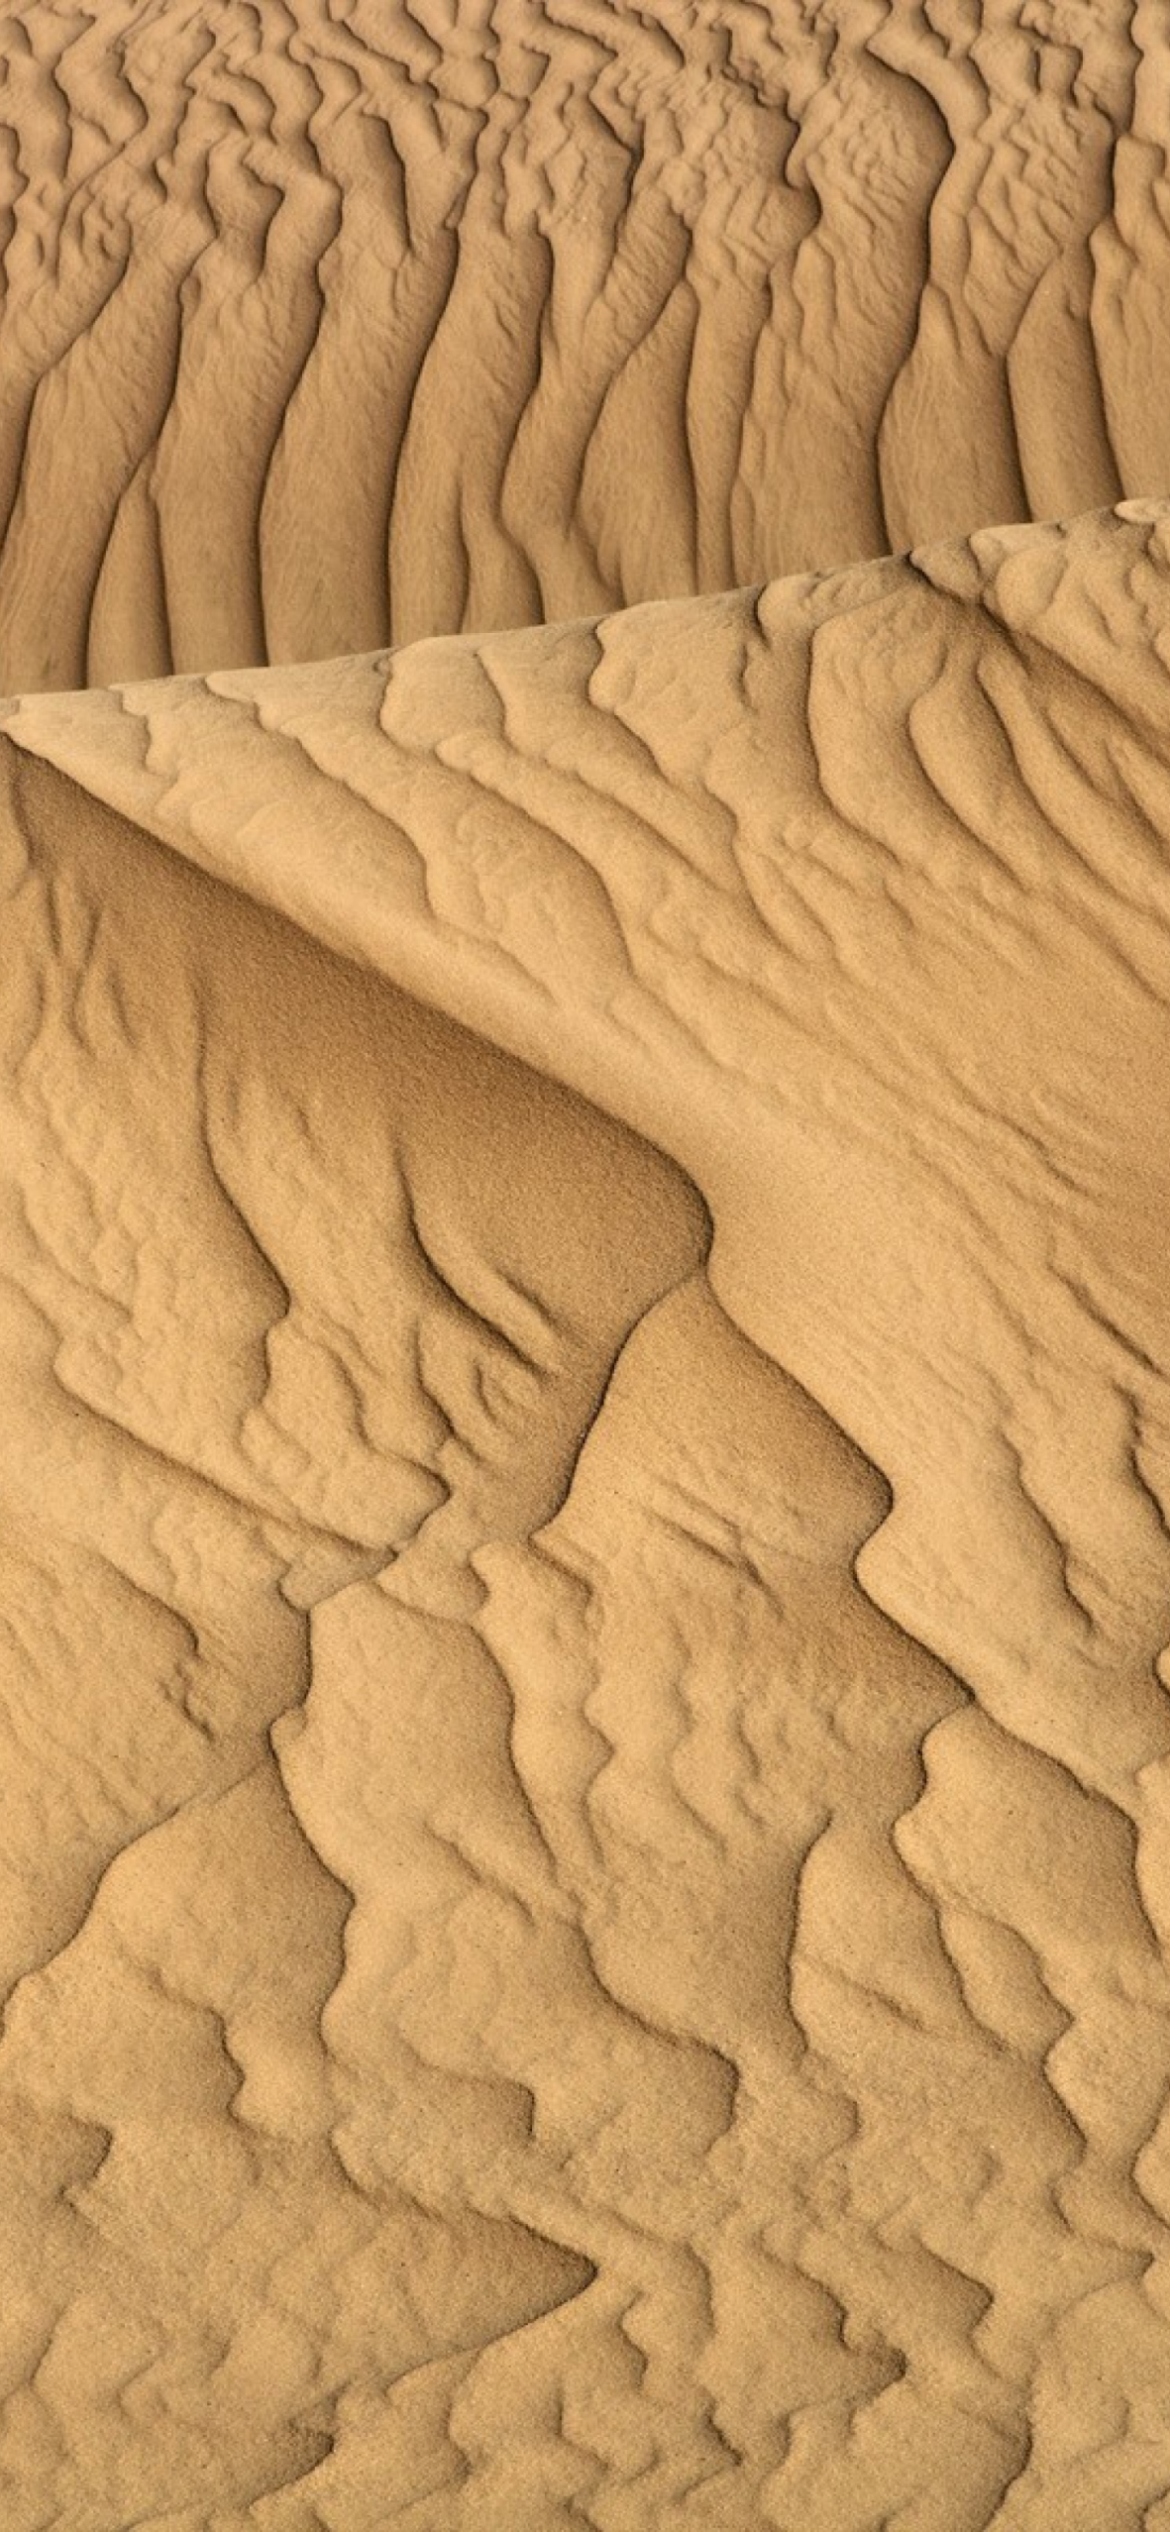 Sahara Sands screenshot #1 1170x2532